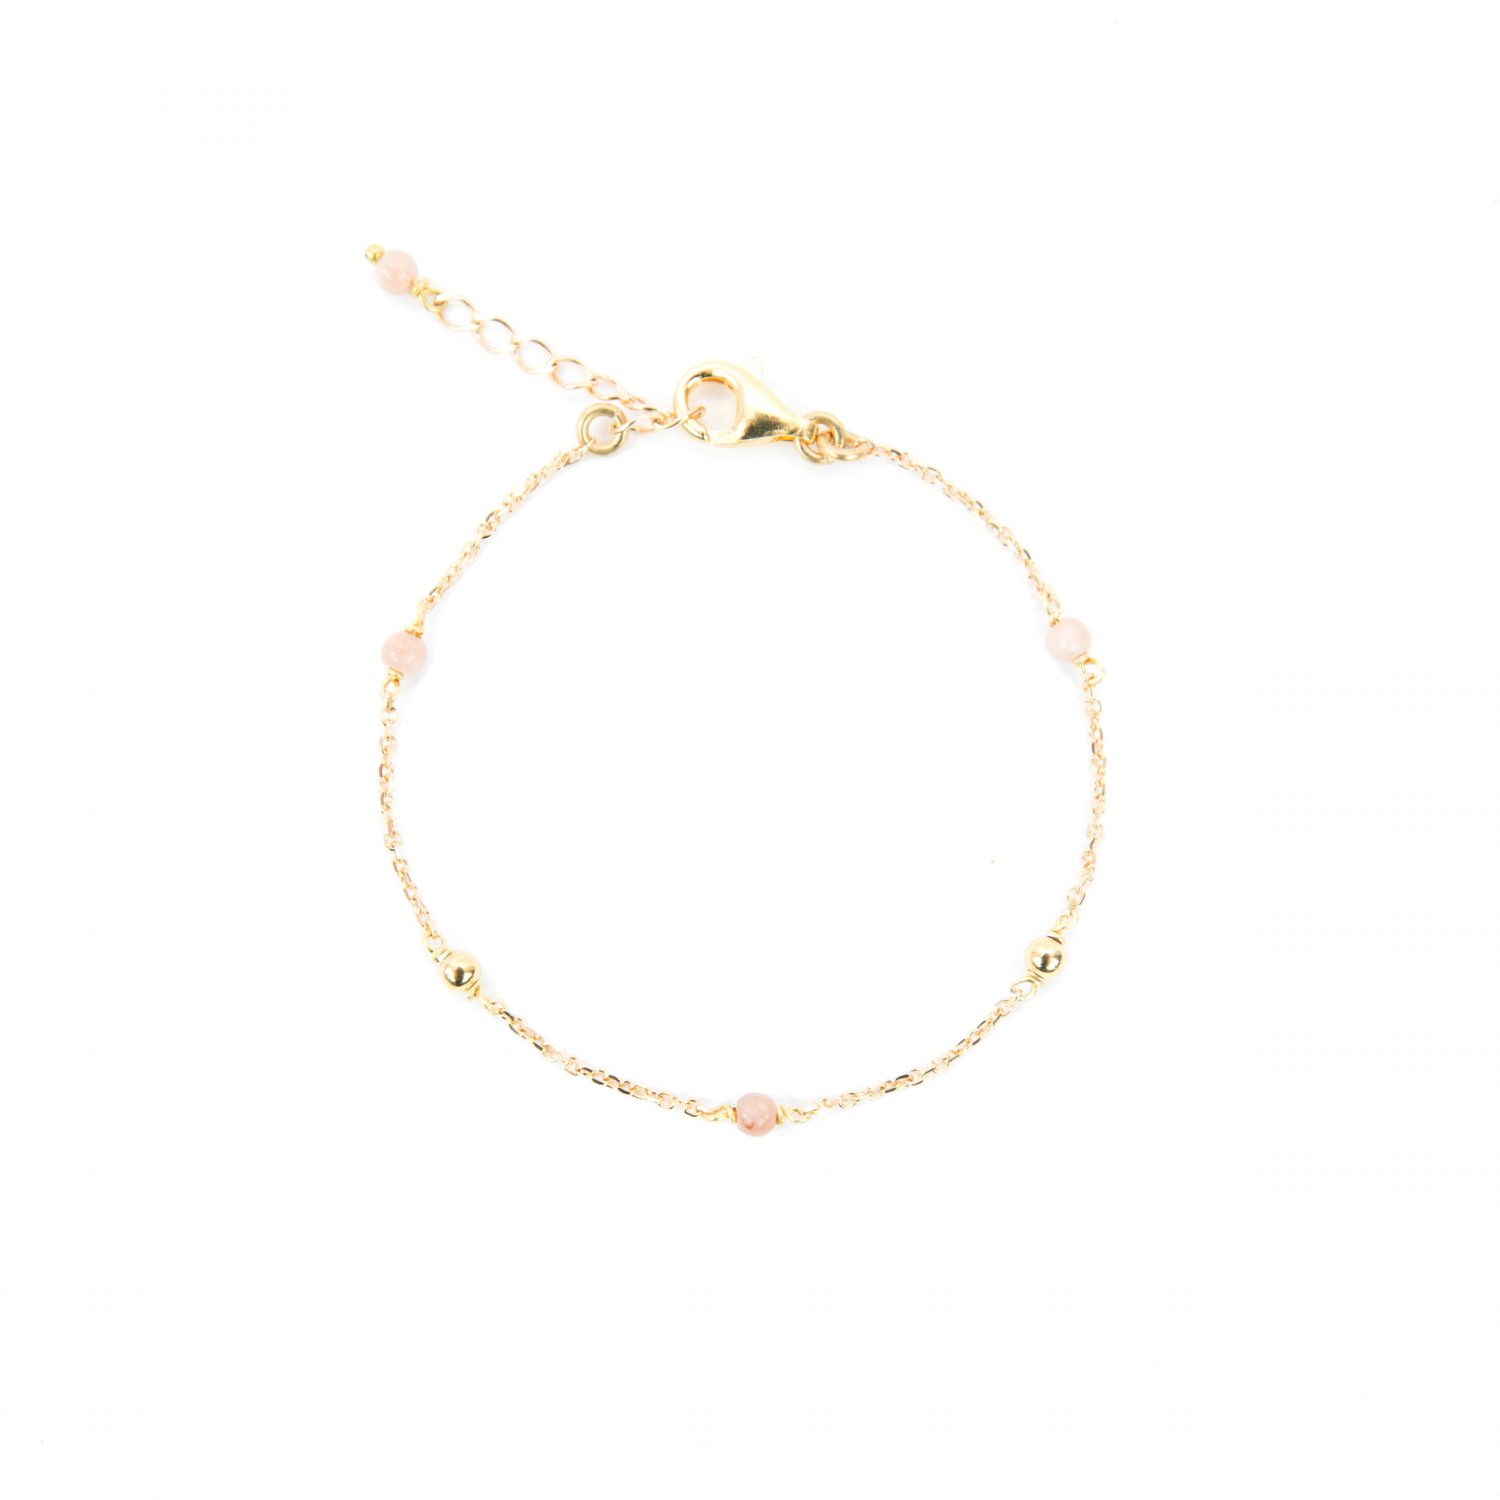 Bracelet Alisée rose plaqué or 16.5 cm, bracelet, bijoux plaqué or, bijoux fantaisie, fait main, made in France, juan les pins